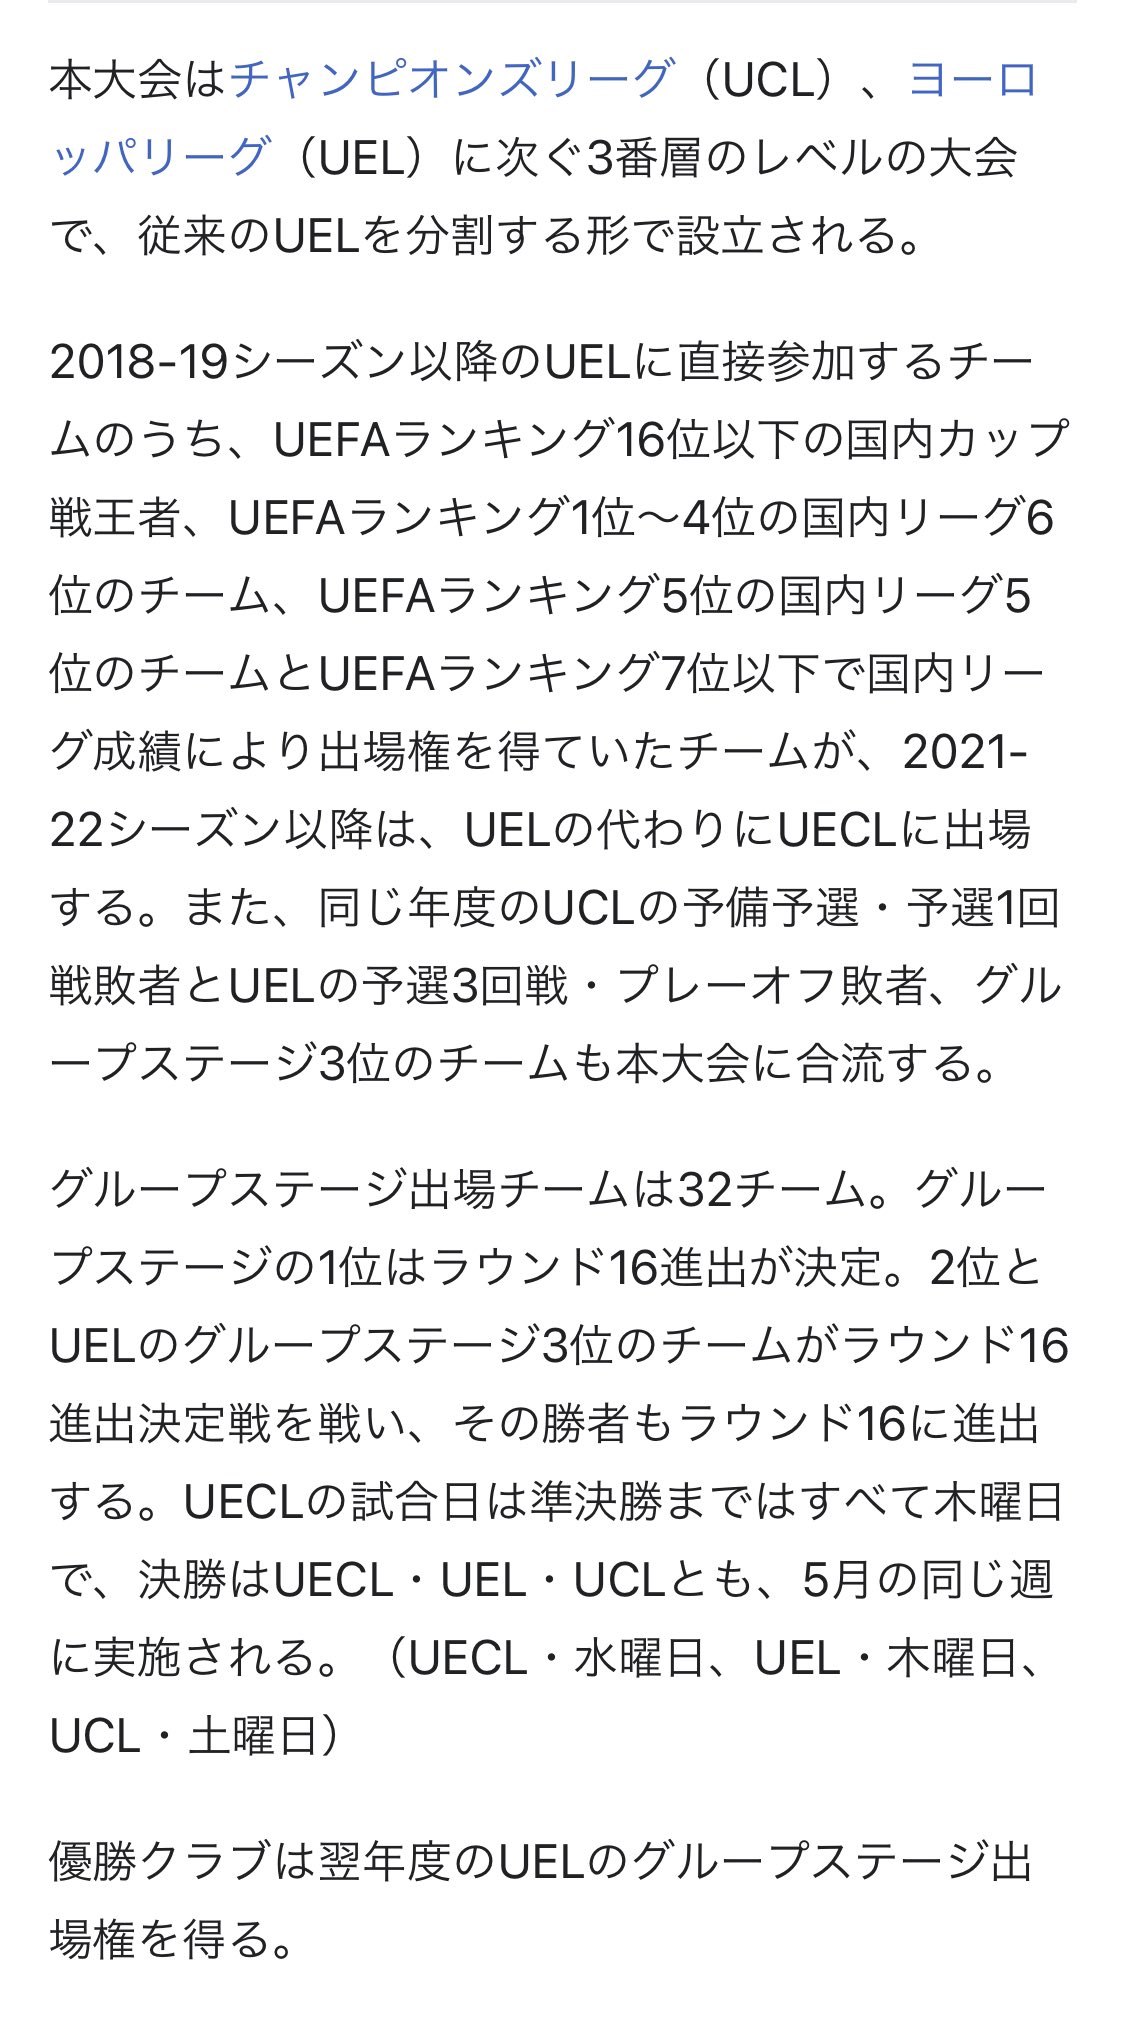 Seiya Emori Lfczcag 0793 Uefaヨーロッパカンファレンスリーグ 略称 Uecl は 欧州サッカー連盟 Uefa の主催で21年から毎年9月から翌年の5月にかけて行われる予定のクラブチームによるサッカーの国際大会である これは チャンピオンズリーグ